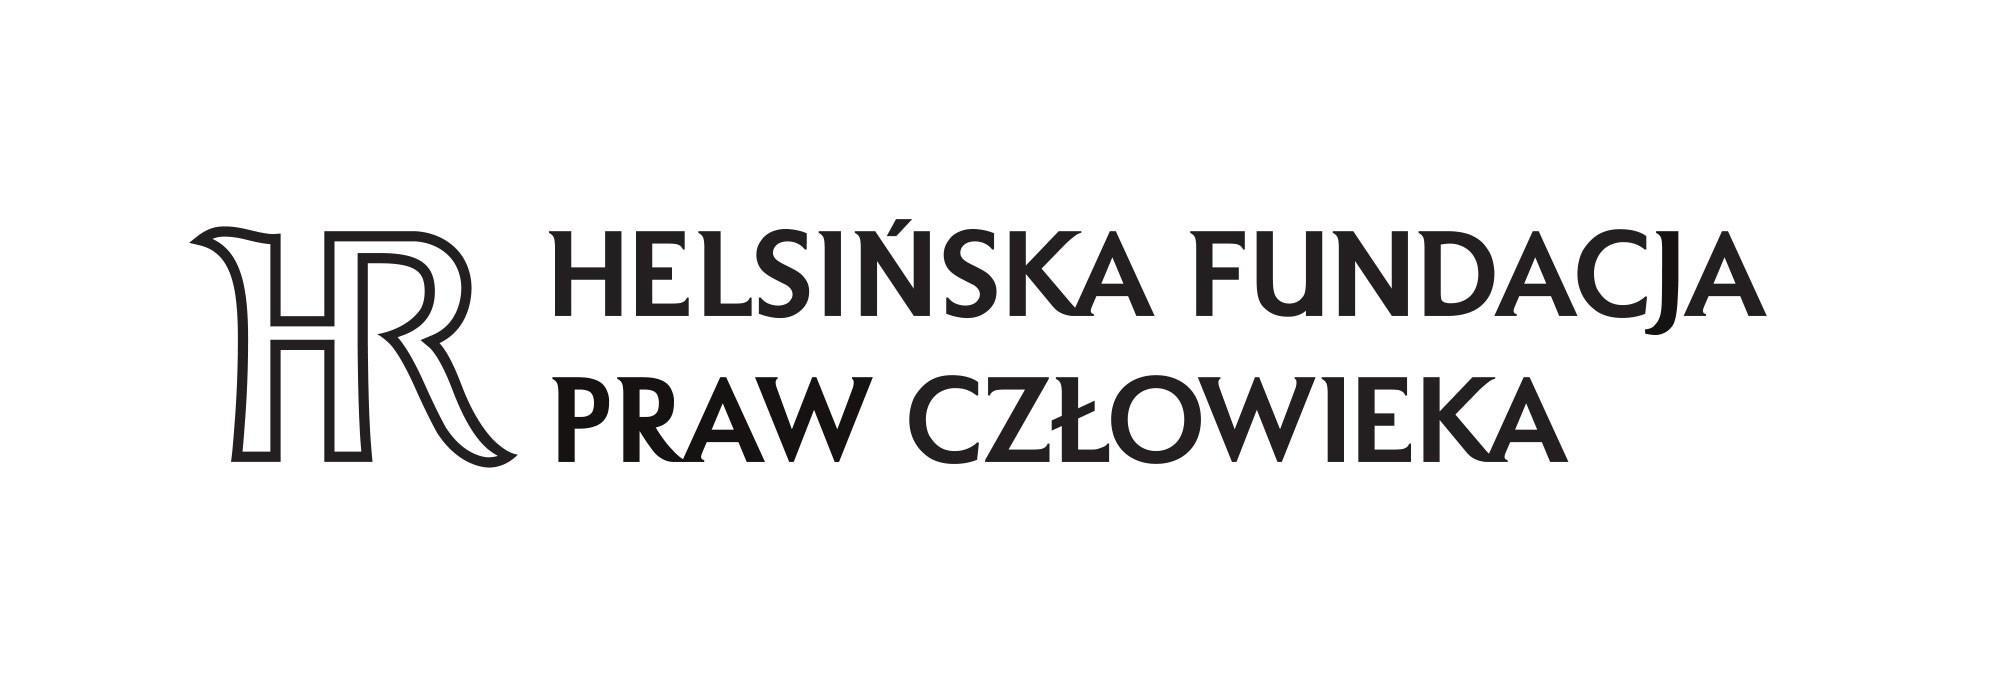 Helsinska Fundacja Praw Czlowieka - Logo